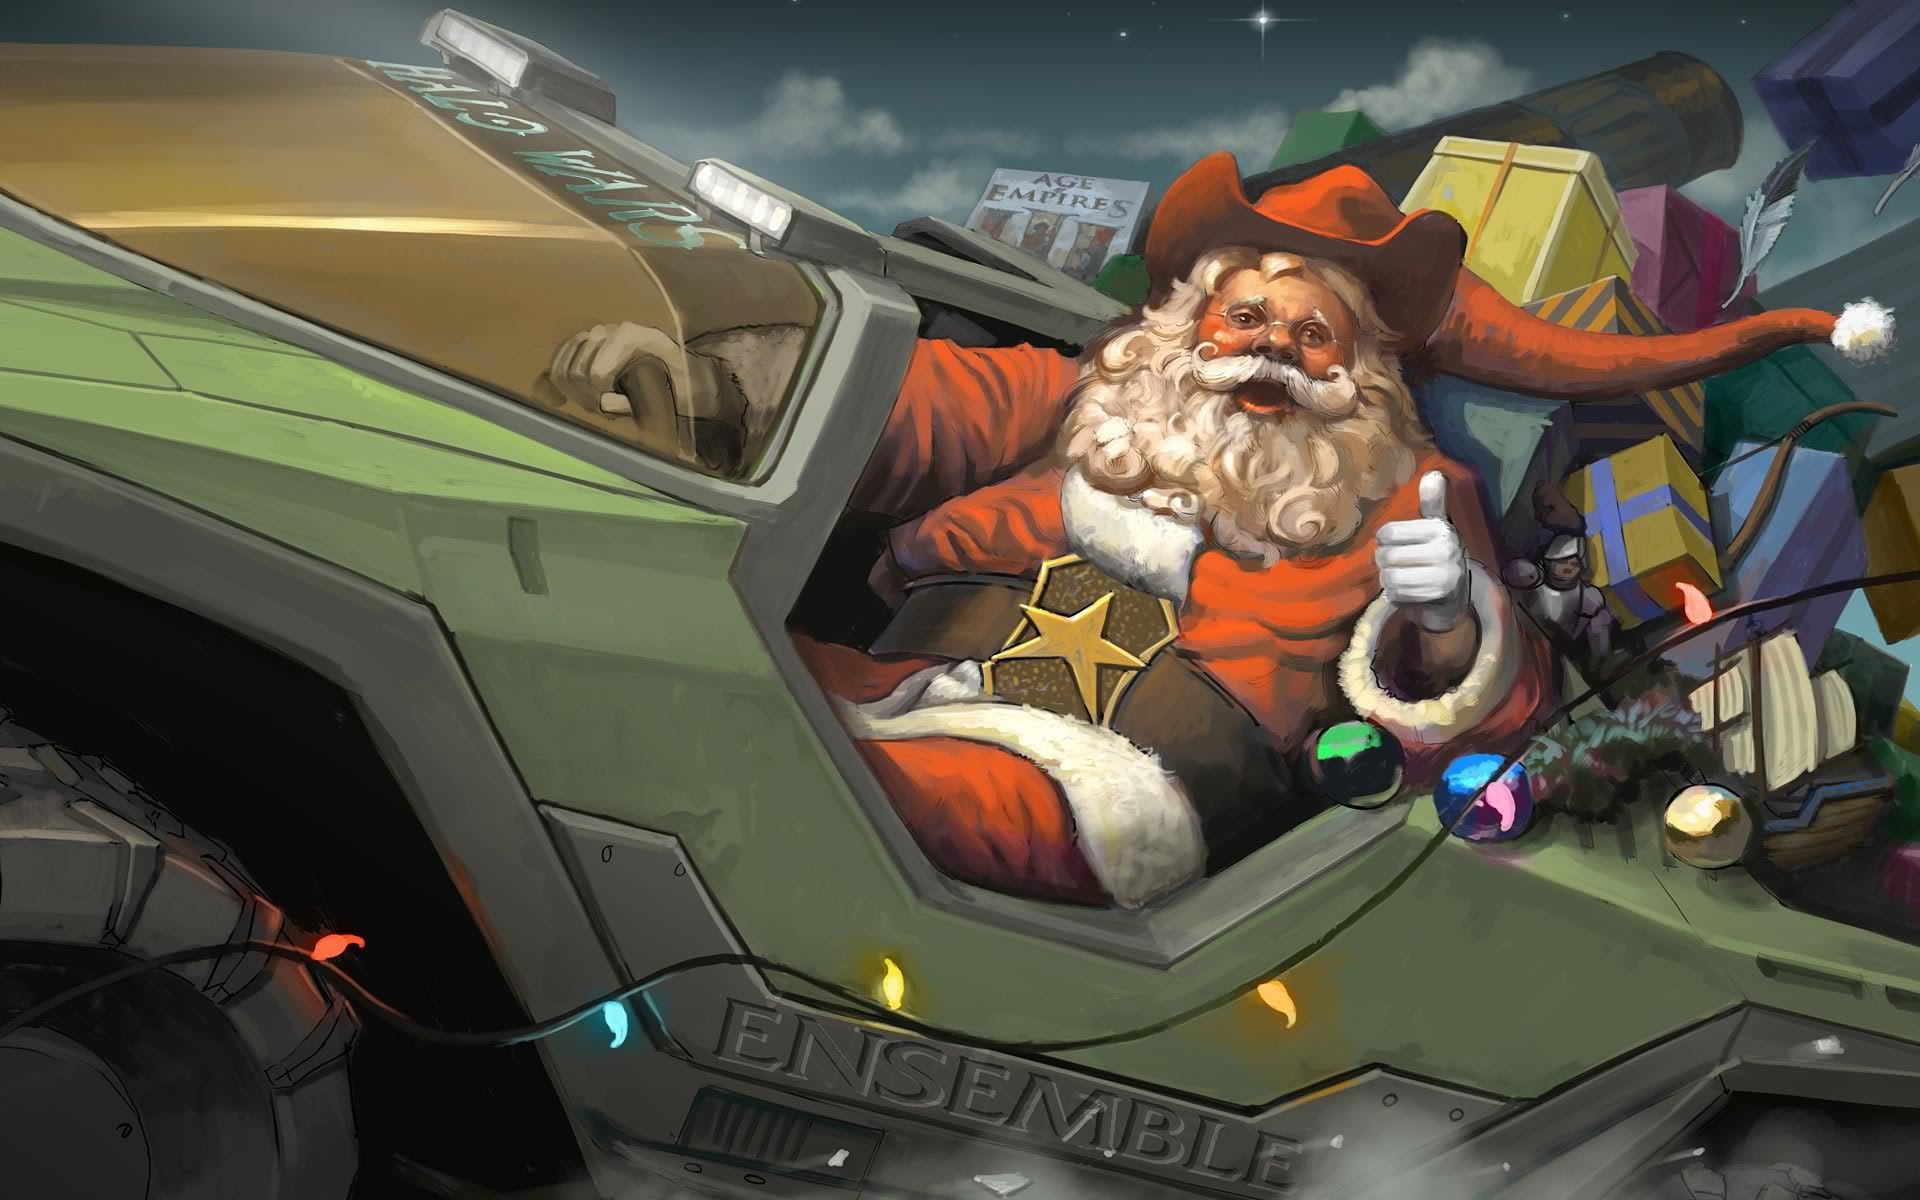 Военный Санта клаус - C Рождеством Христовым поздравительные картинки